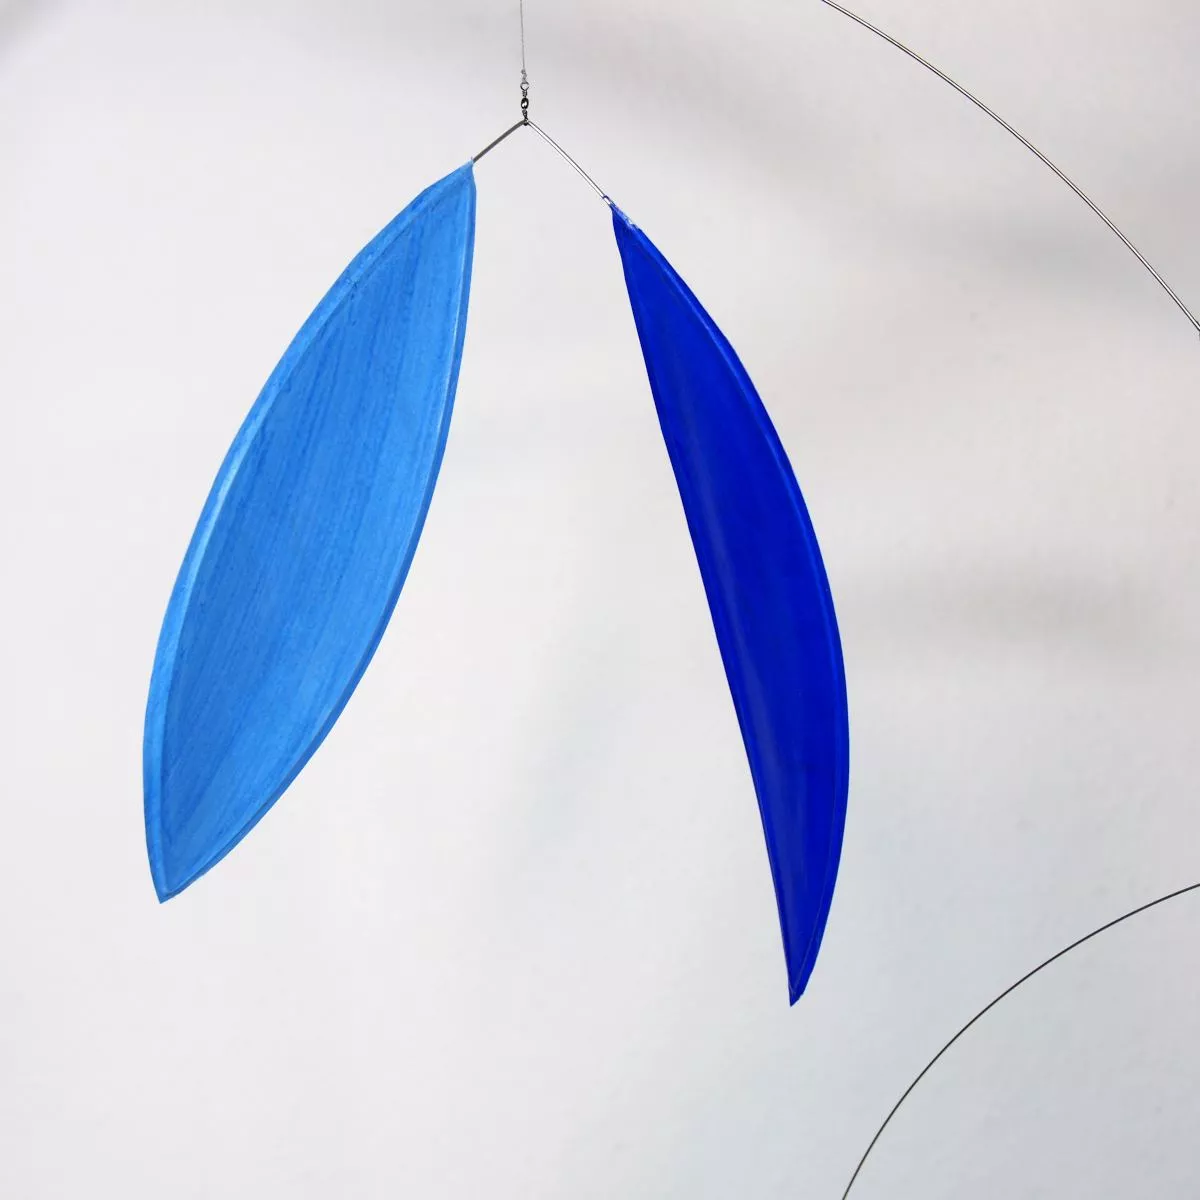 Large Art Mobile "Leaf" Green / Light Blue with Leaf-Shaped Elements (80 x 60 cm)